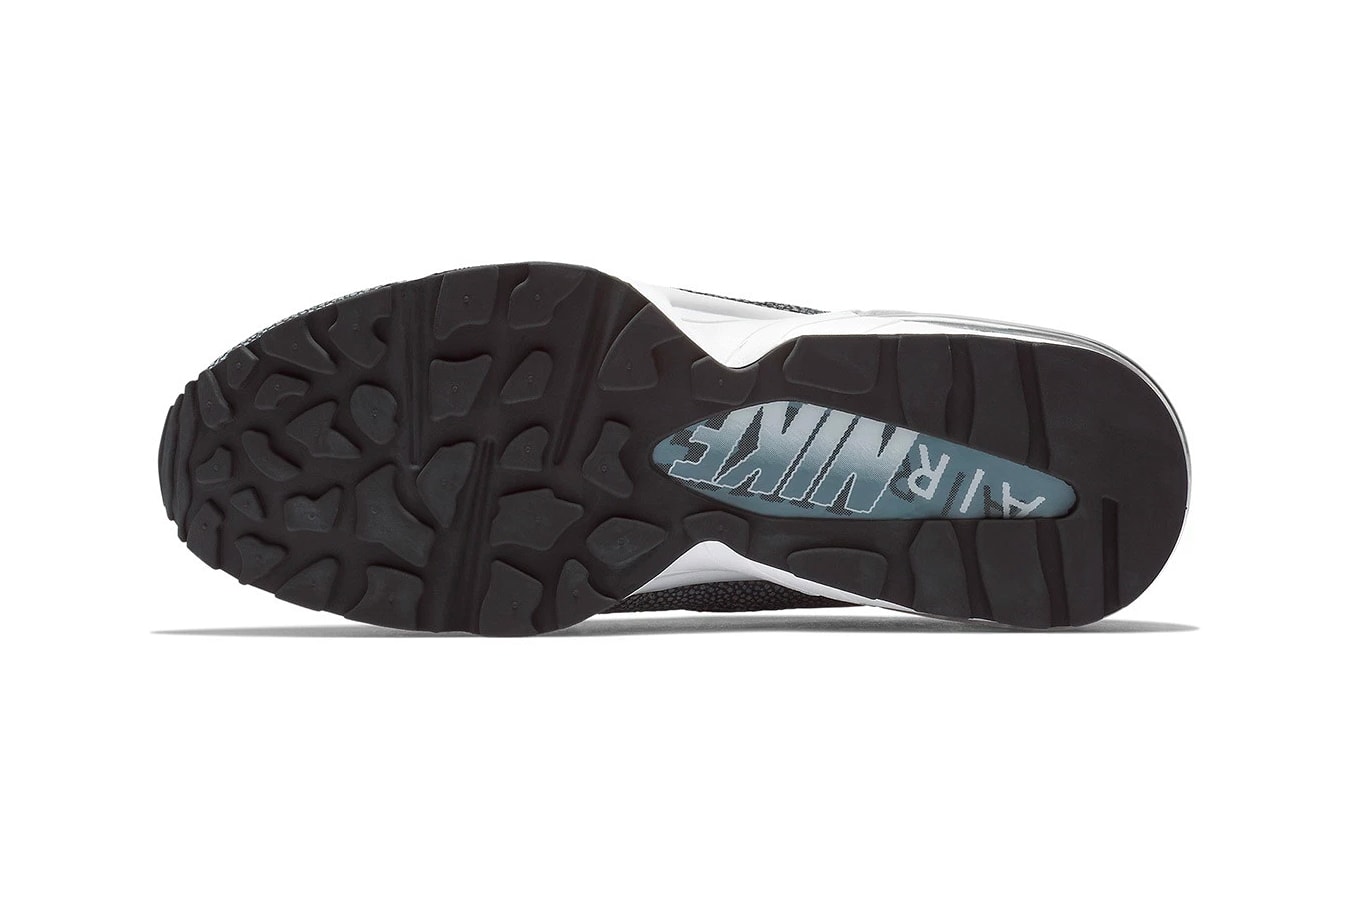 nike air max 94 grey black animal safari print fall 2018 sneaker release